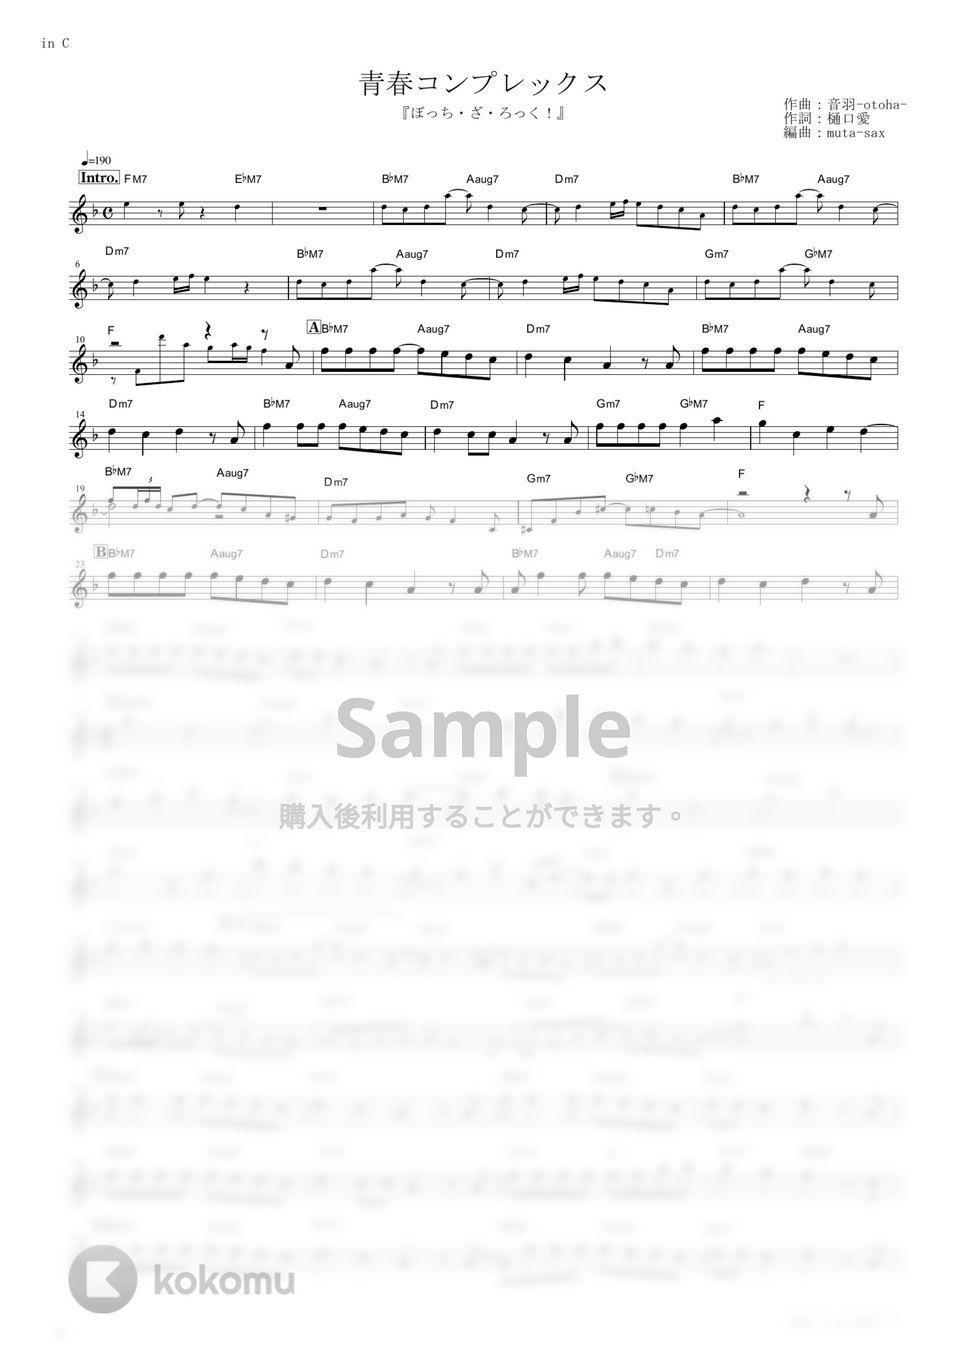 結束バンド - 青春コンプレックス (『ぼっち・ざ・ろっく！』 / in C) by muta-sax